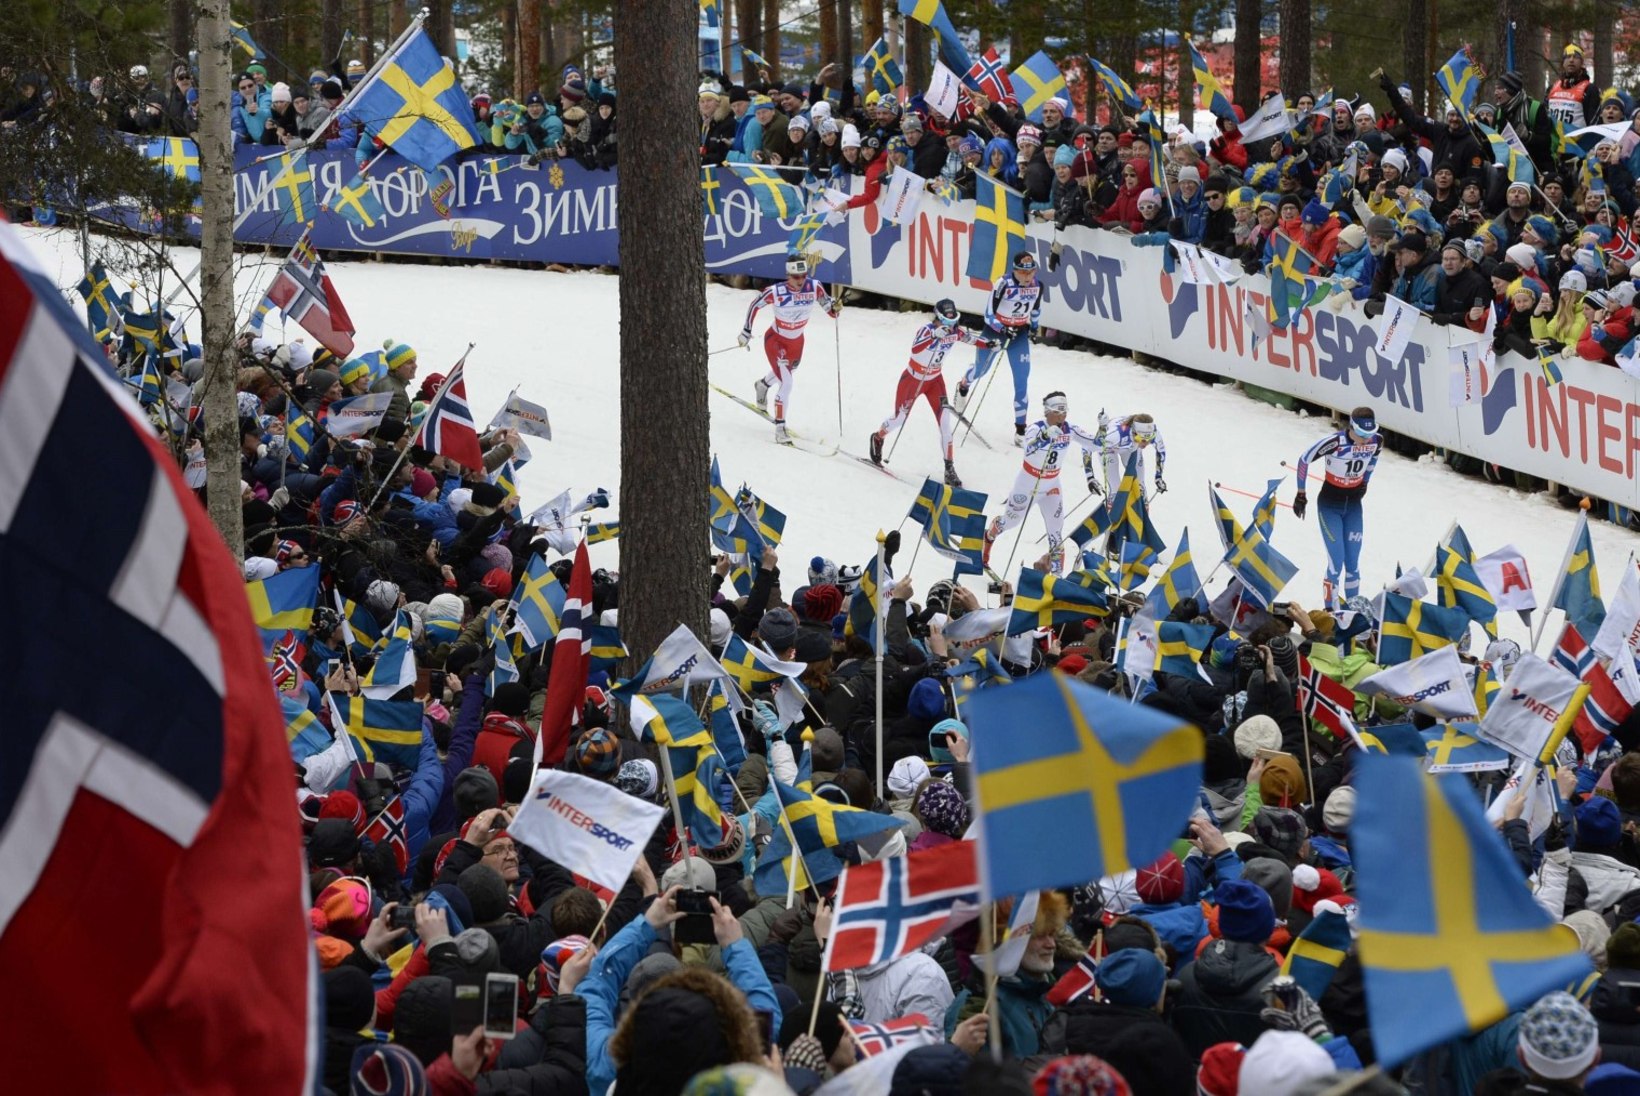 Vihased Norra dopingukütid boikoteerivad Pyeongchangi taliolümpiat